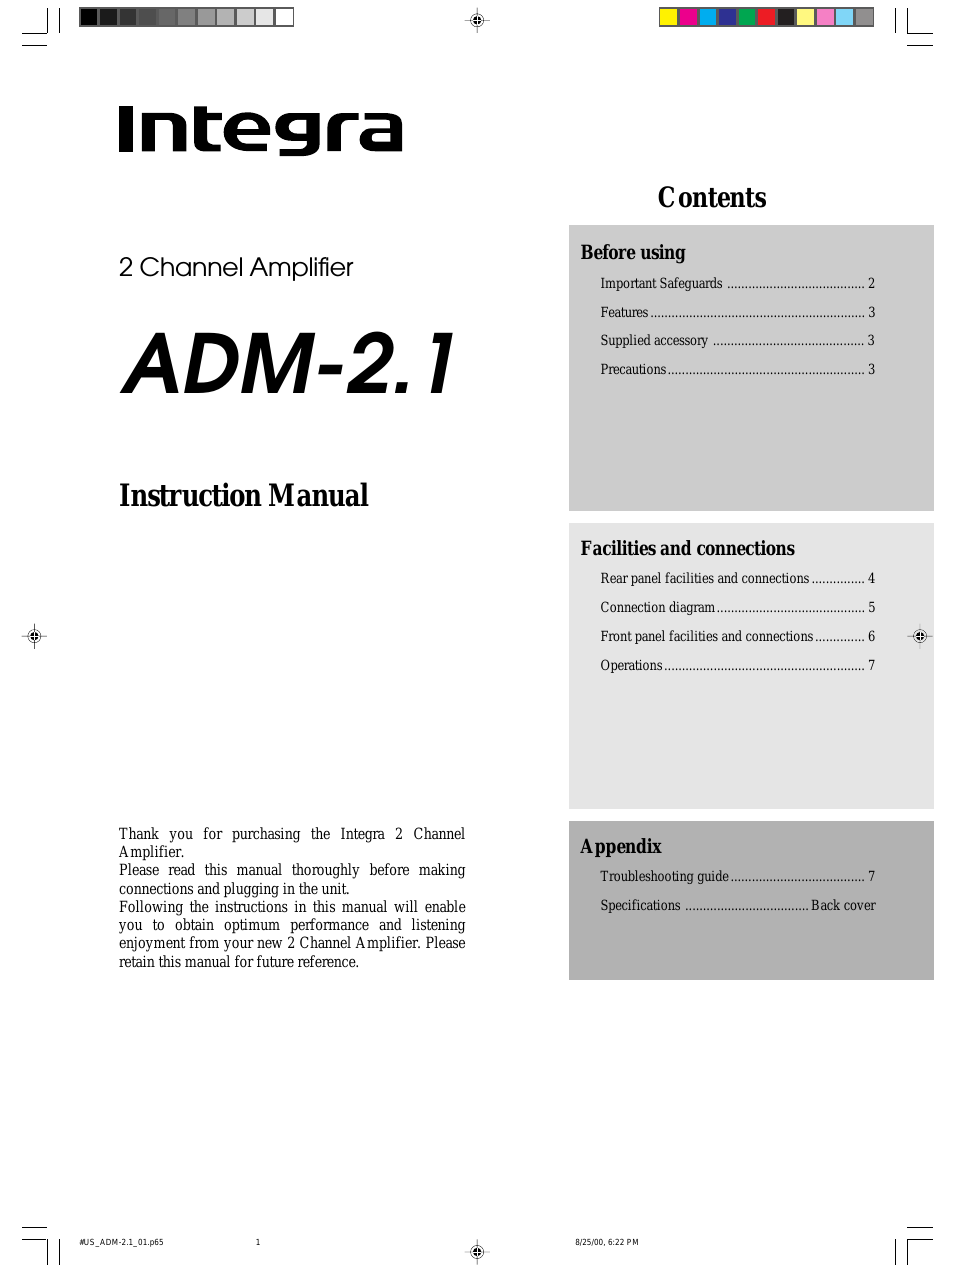 ADM-2.1